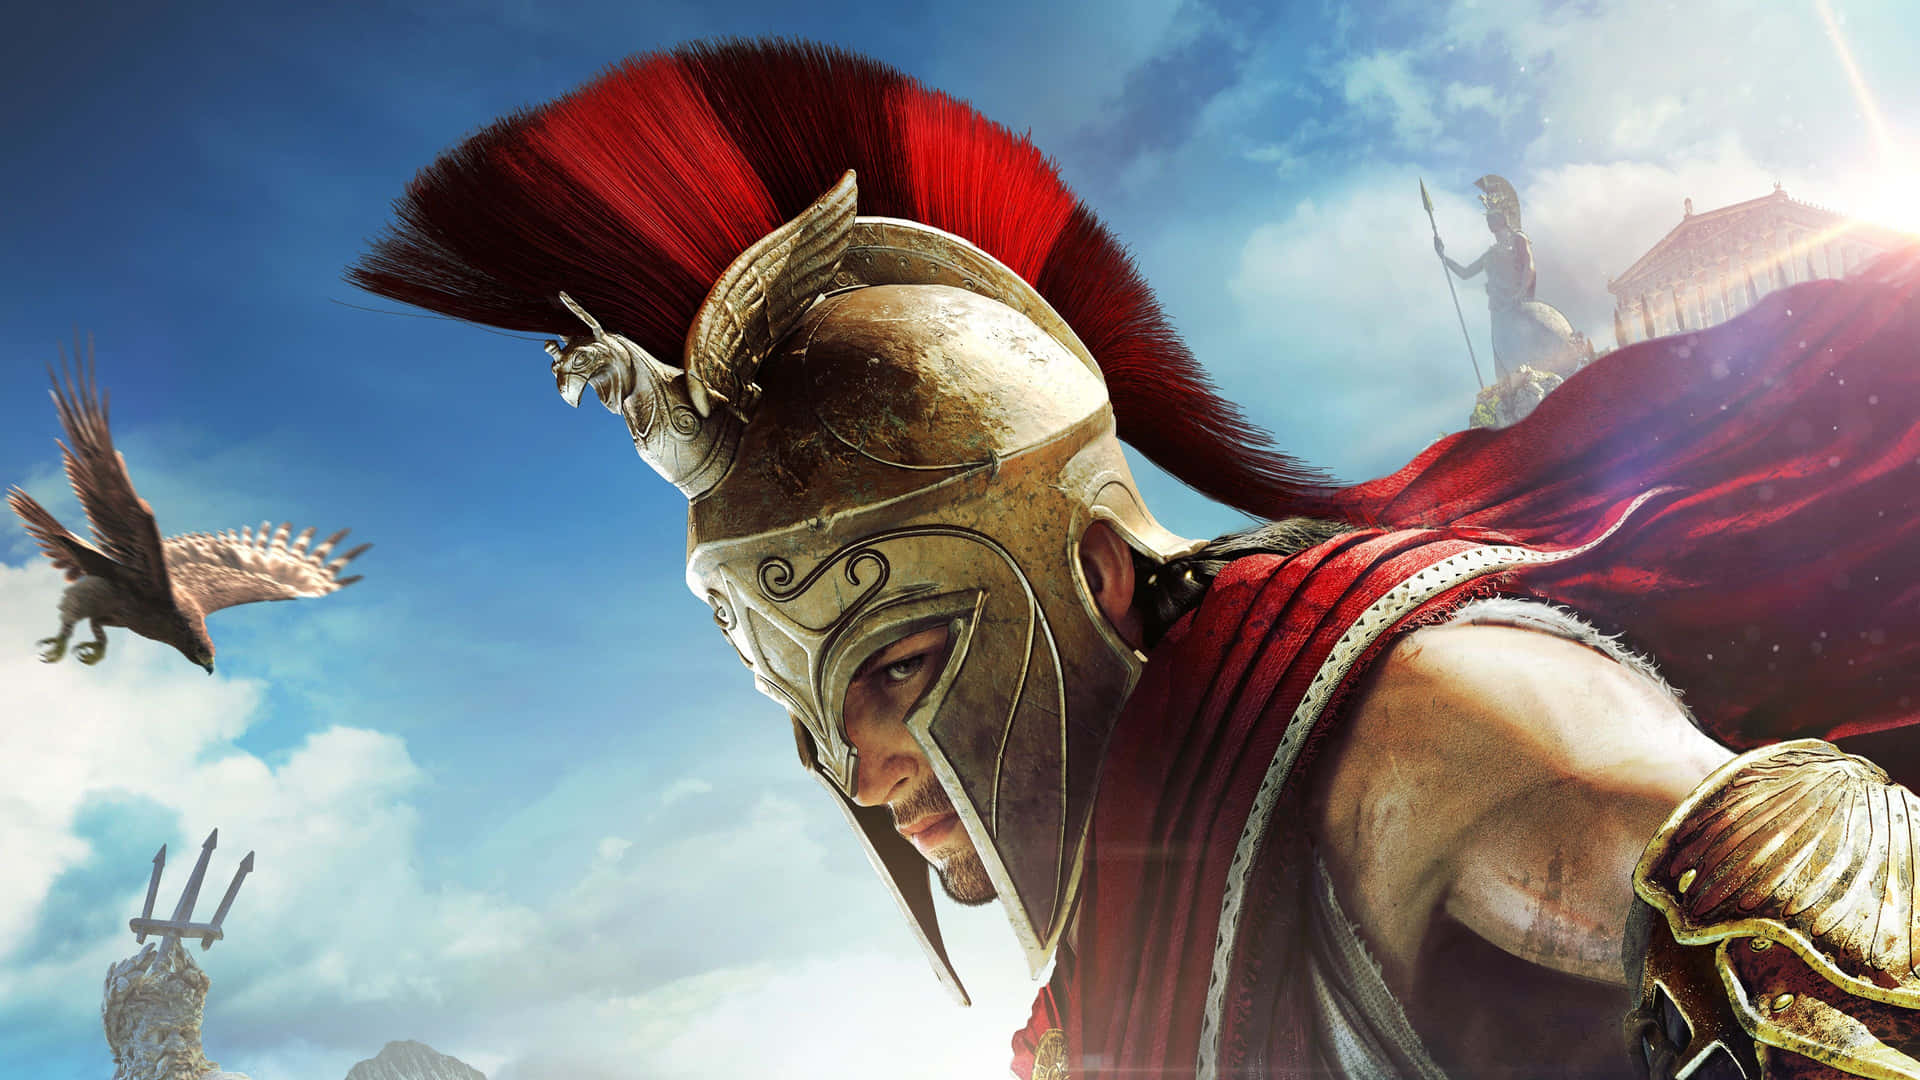 Plano De Fundo De Assassin's Creed Odyssey Em 4k 3840 X 2160